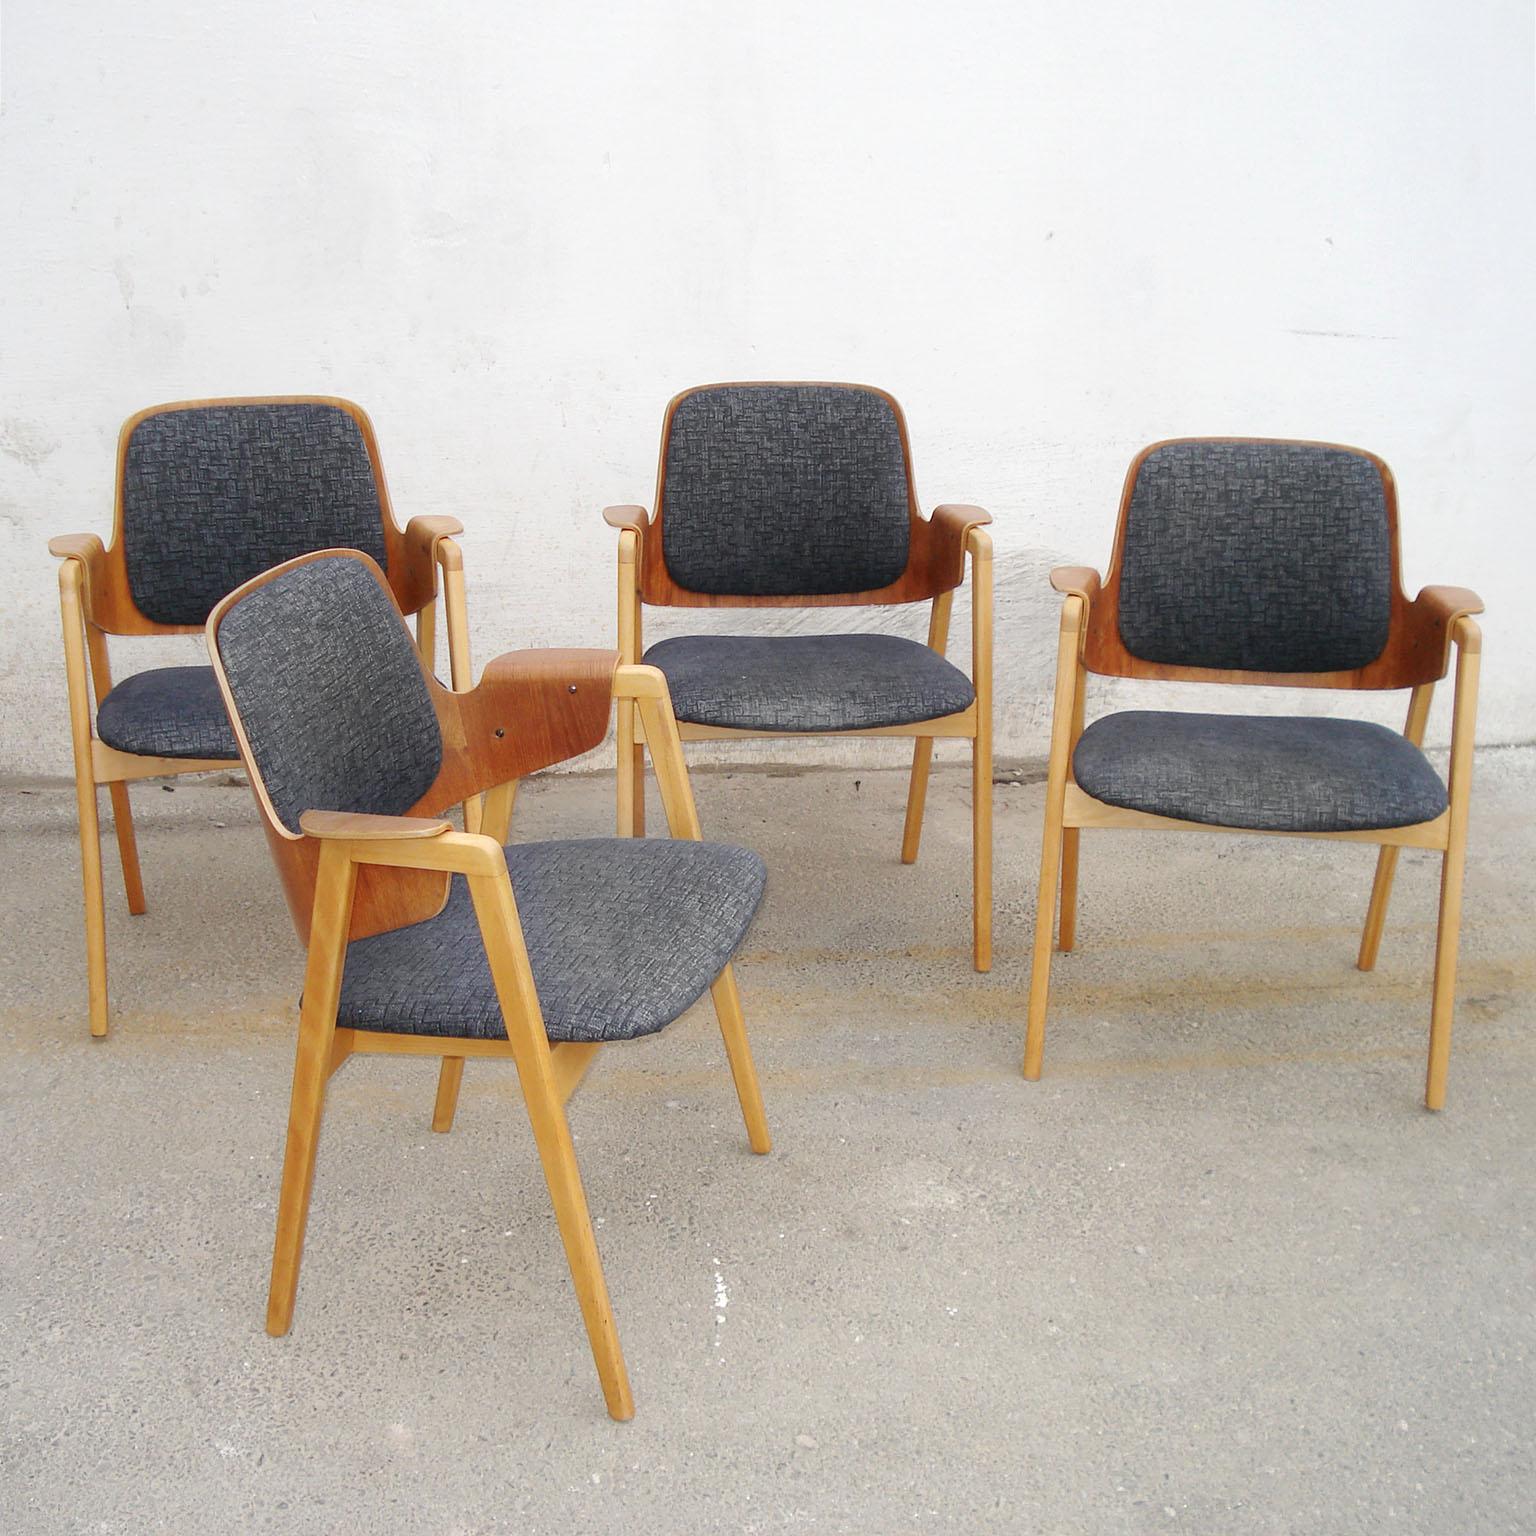 Skandinavischer Mid-Century Modern-Satz mit vier Sesseln, entworfen von Elias Barup für Gärsnäs, 1950er Jahre.
Sessel aus Teakholz und Buche mit Originalpolsterung. Sehr guter gebrauchter Zustand, mit der erwarteten Patina und